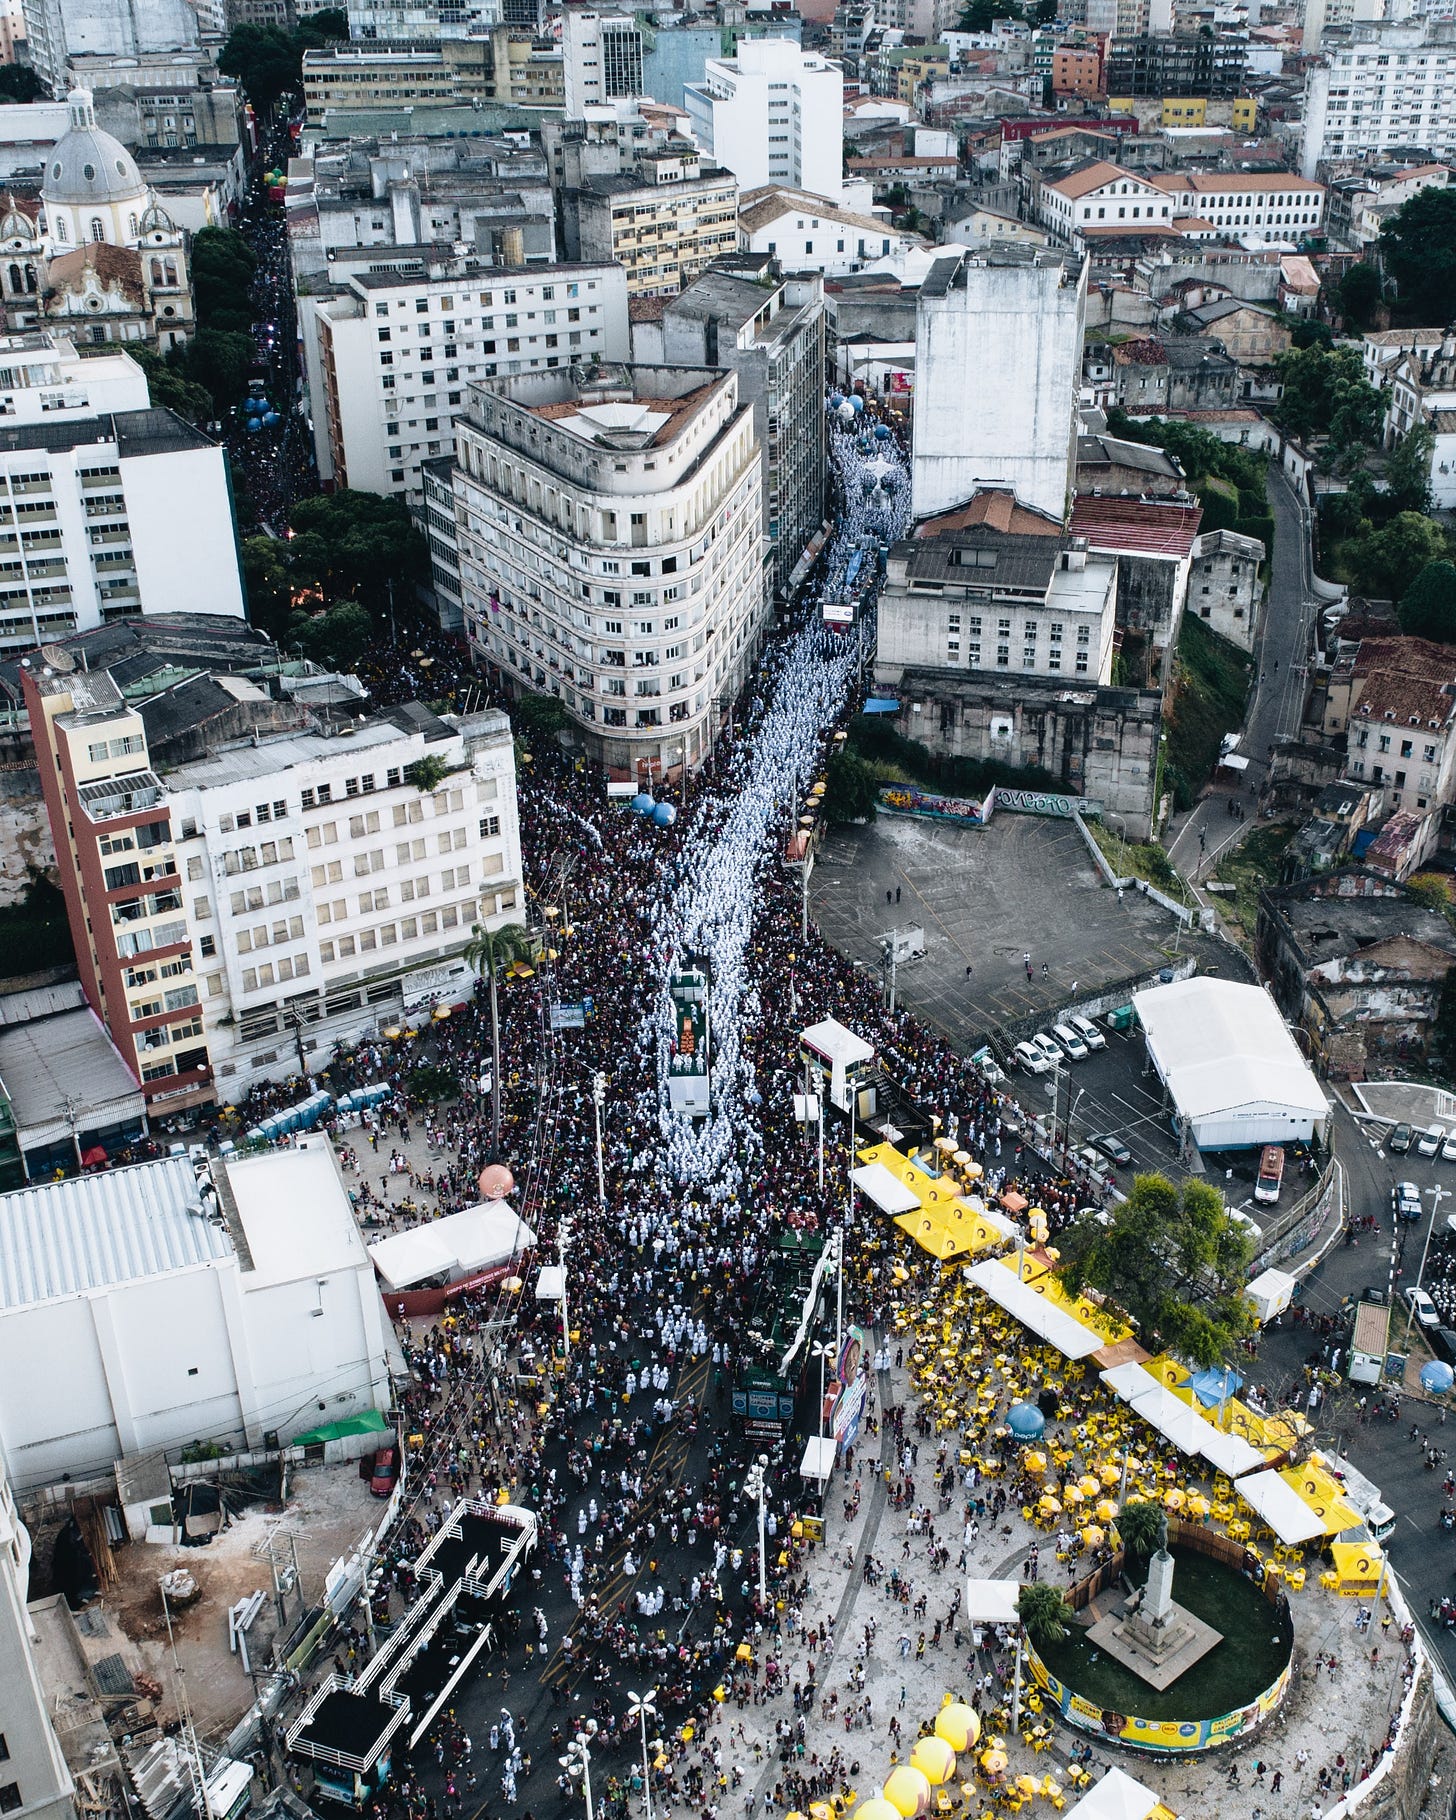 Fotografia aérea de Slavador em um dia de carnaval: as ruas apinhadas de gente, prédios, um sem-fim de paisagem urbana típica